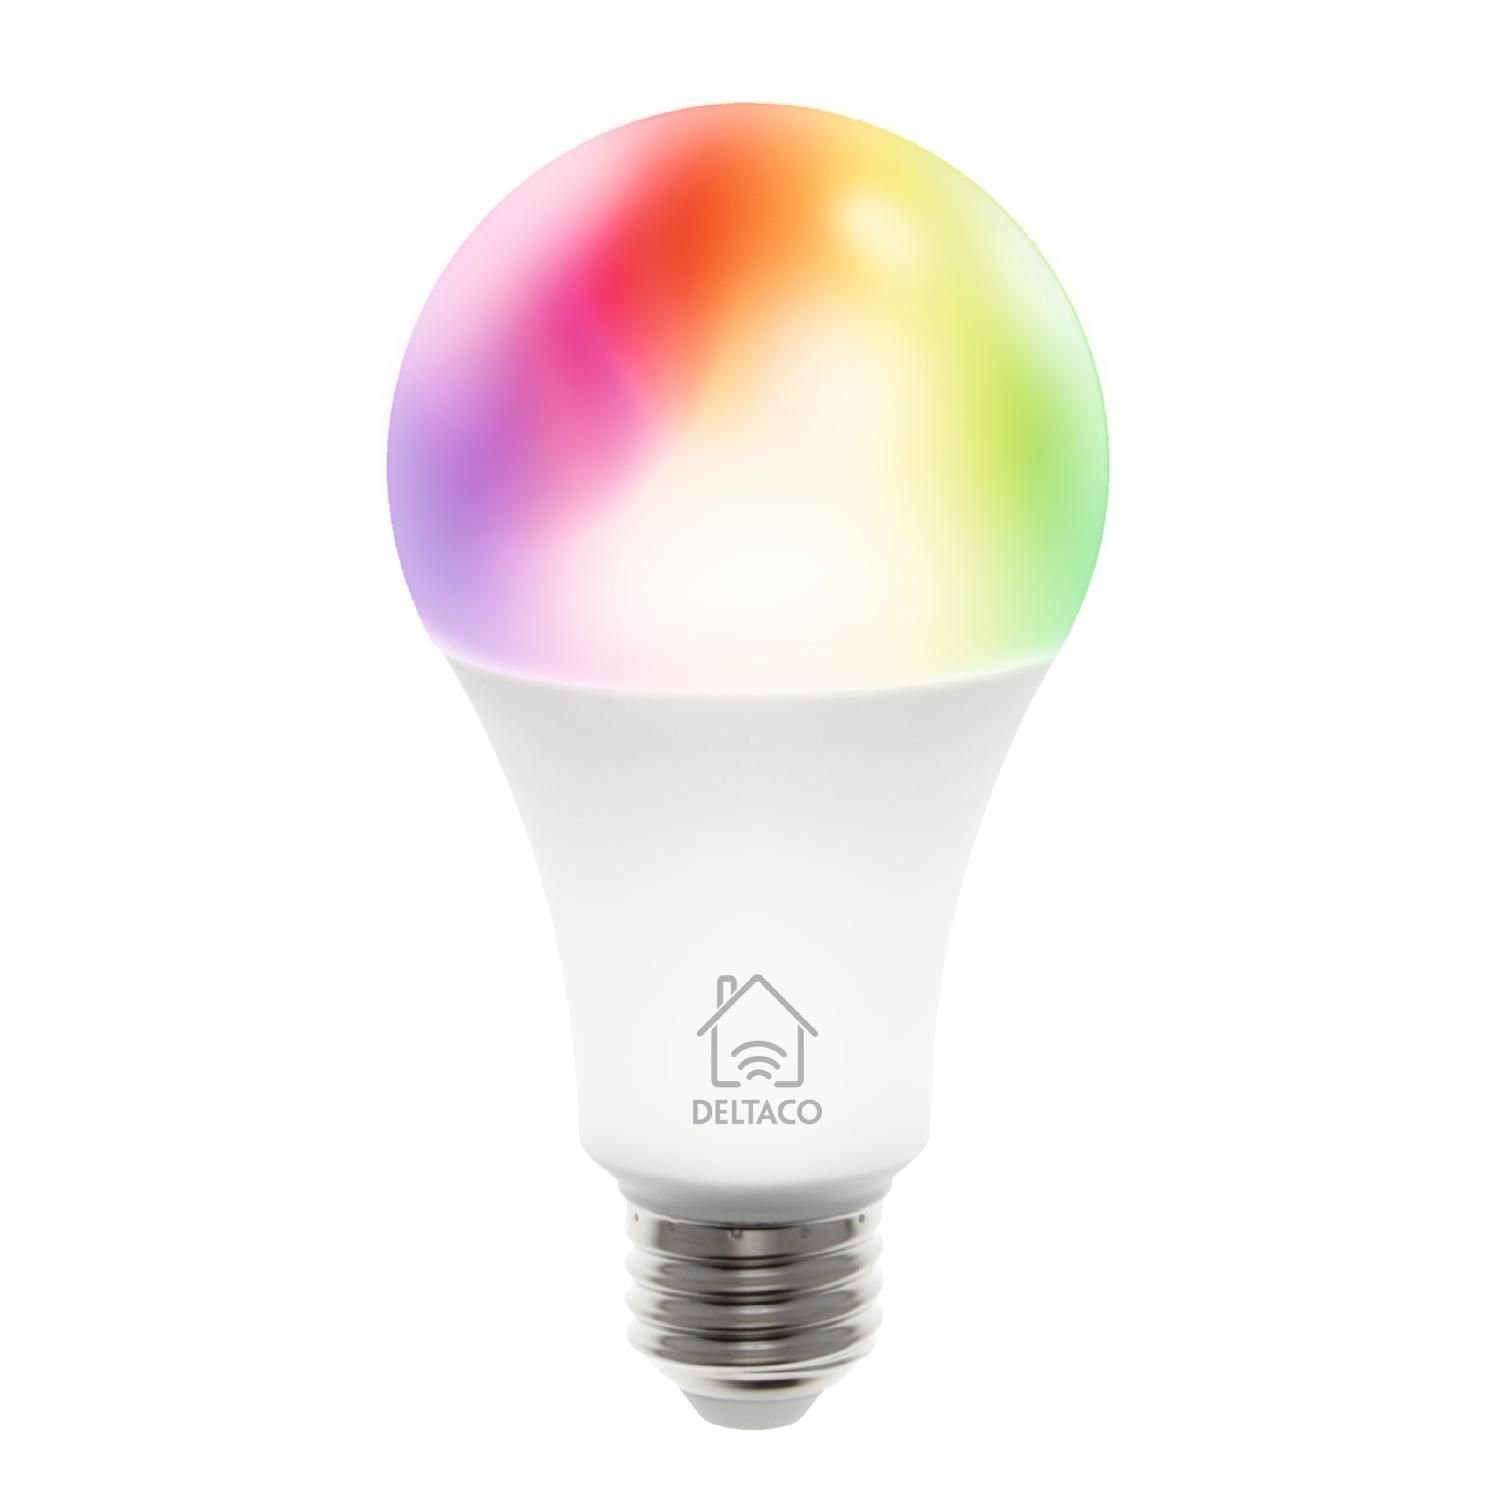 DELTACO SMART HOME LED-Leuchtmittel Smarte E27 LED Birne, RGB 9 Watt, E27, 1 St., inkl. 5 Jahre Herstellergarantie